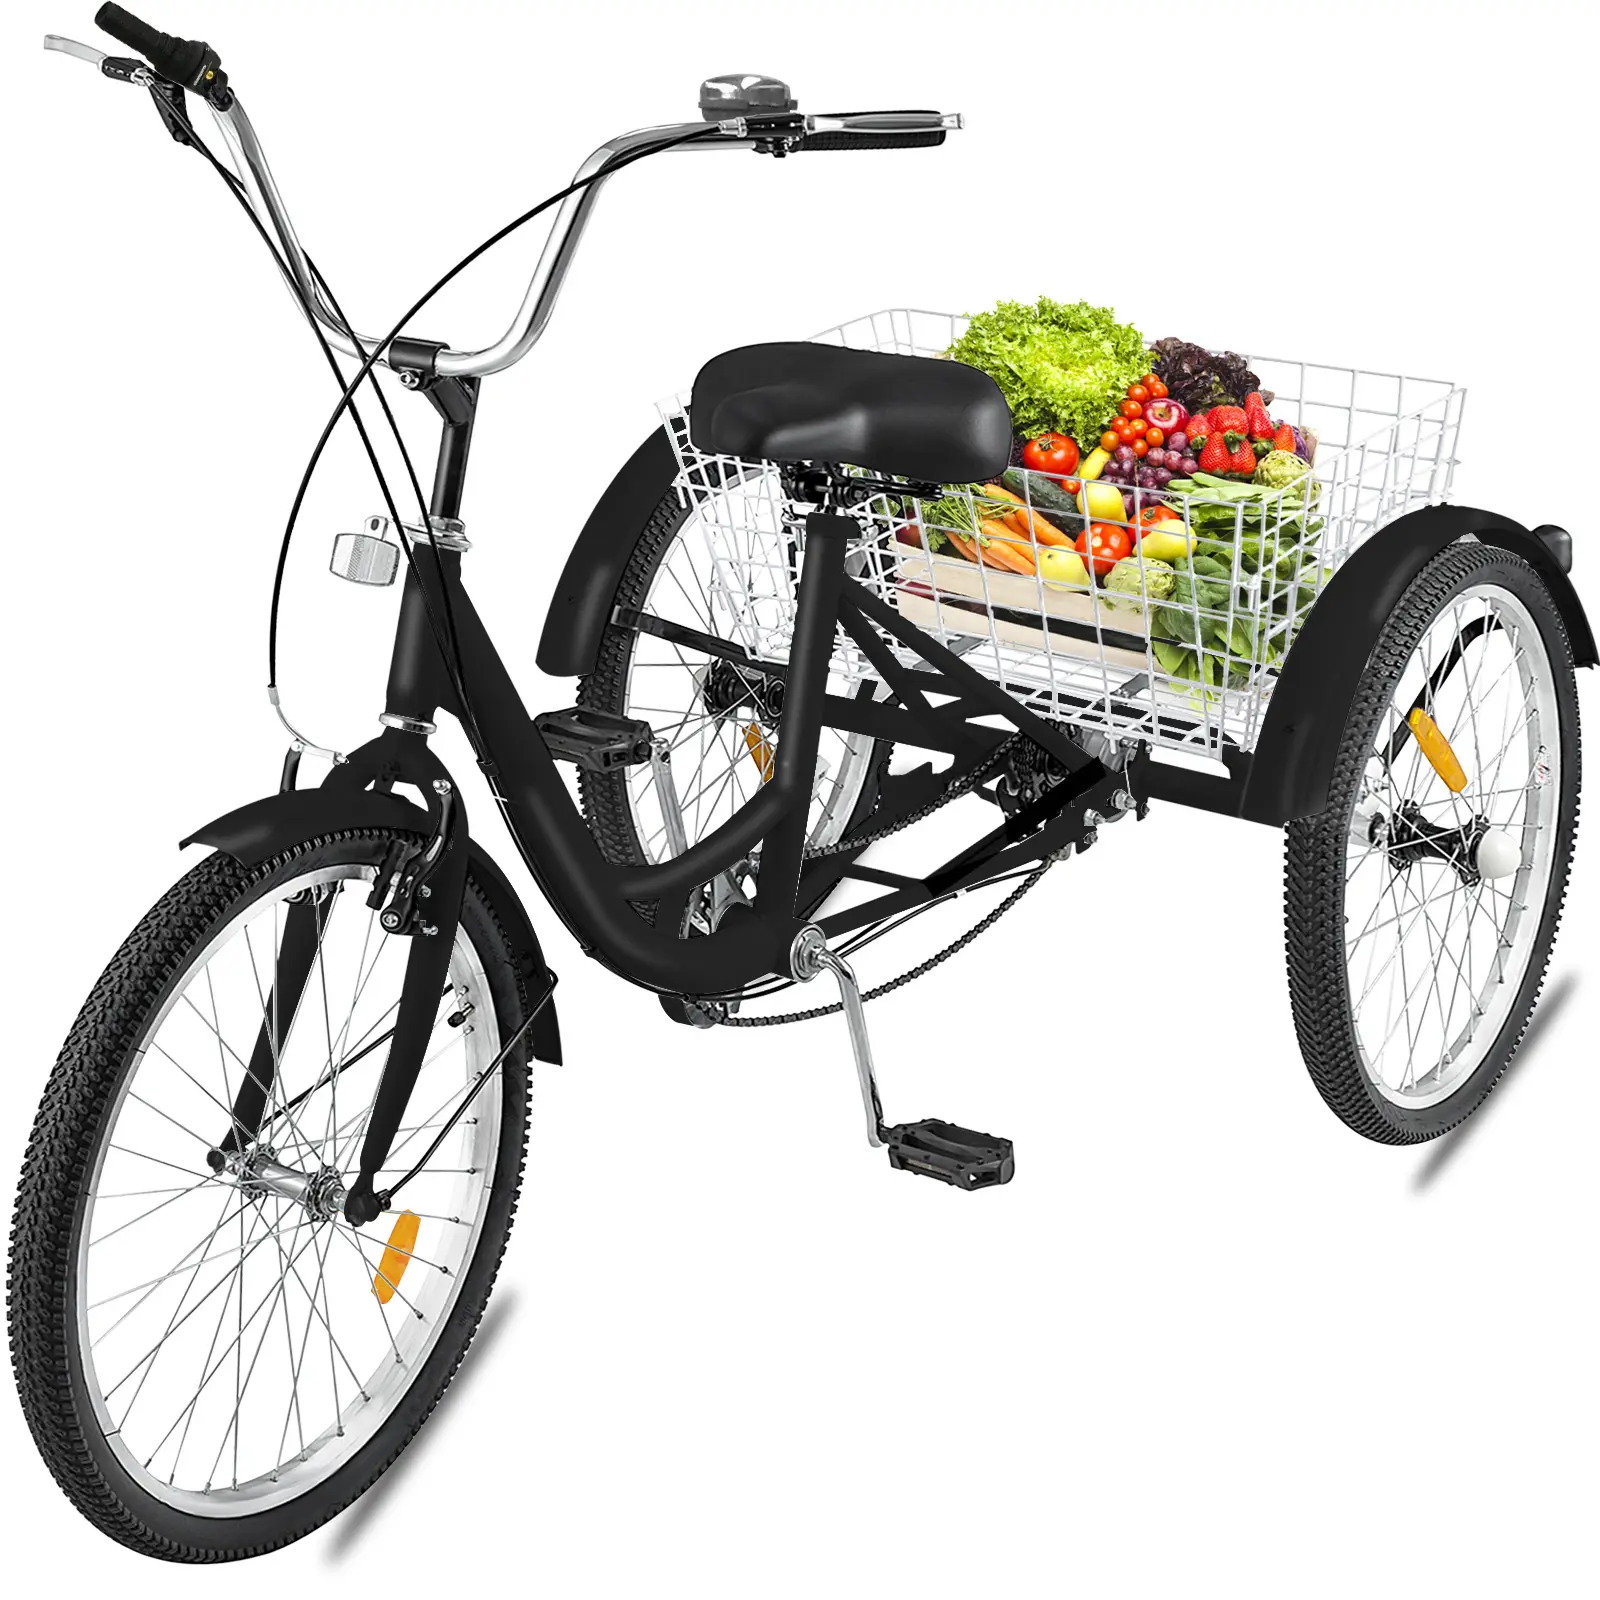 Трициклы для рикши, хит продаж, для переноски овощей и продуктов питания, трехколесные велосипеды 24 дюйма